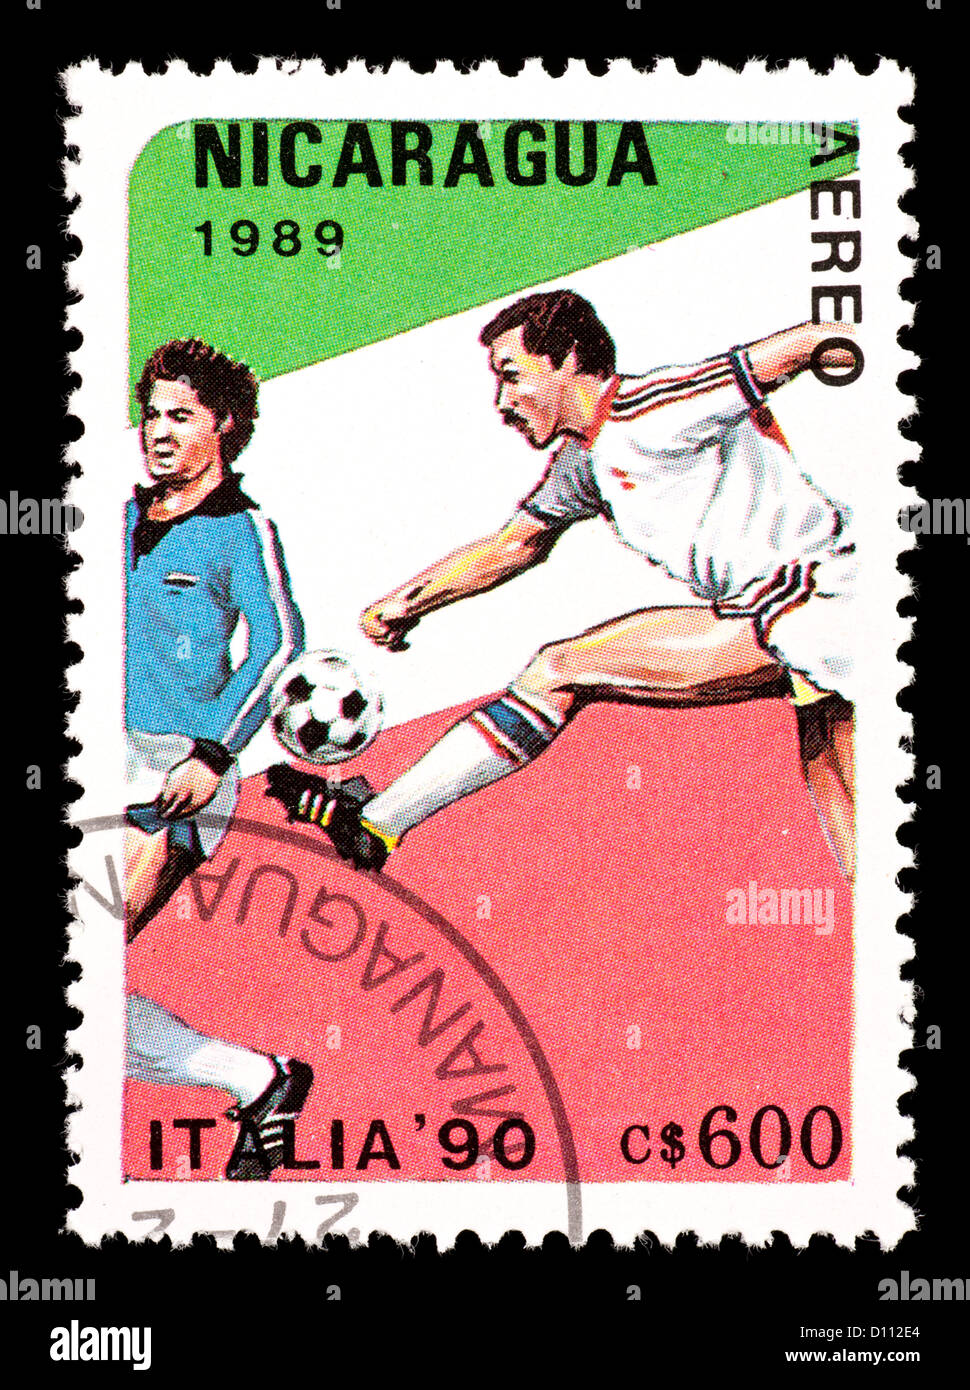 Timbre-poste du Nicaragua représentant deux joueurs de football, émis pour la Coupe du Monde 1990 en Italie. Banque D'Images